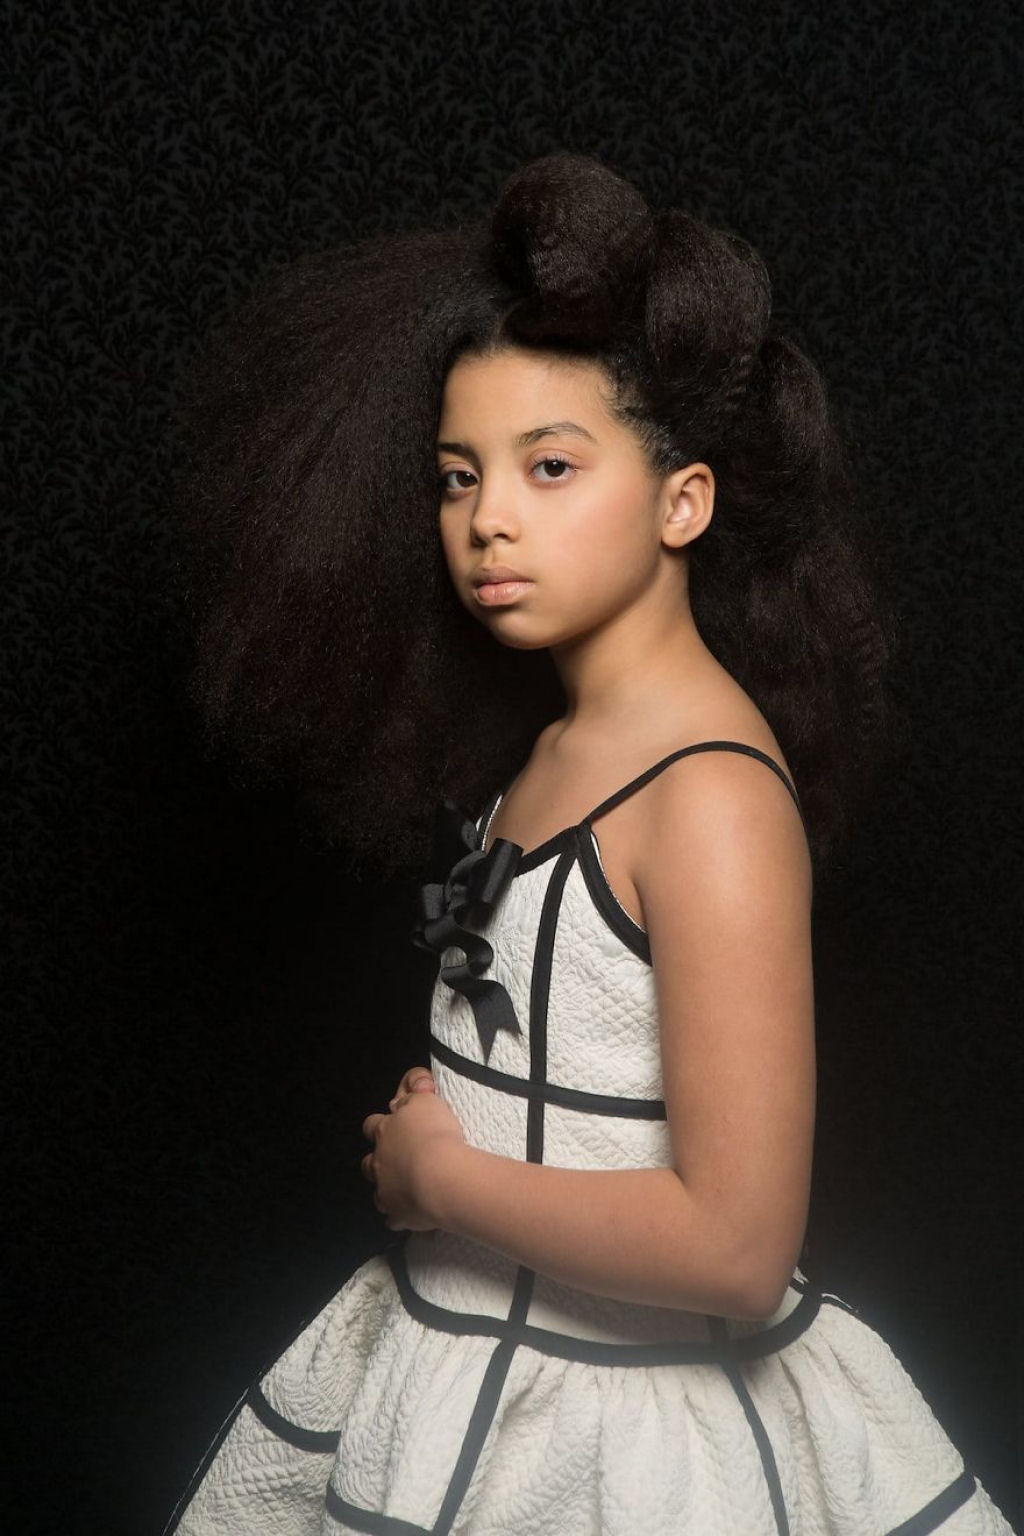 Retratos inspirados destacam a beleza do cabelo crespo para que outras garotas parem de escond-lo 18